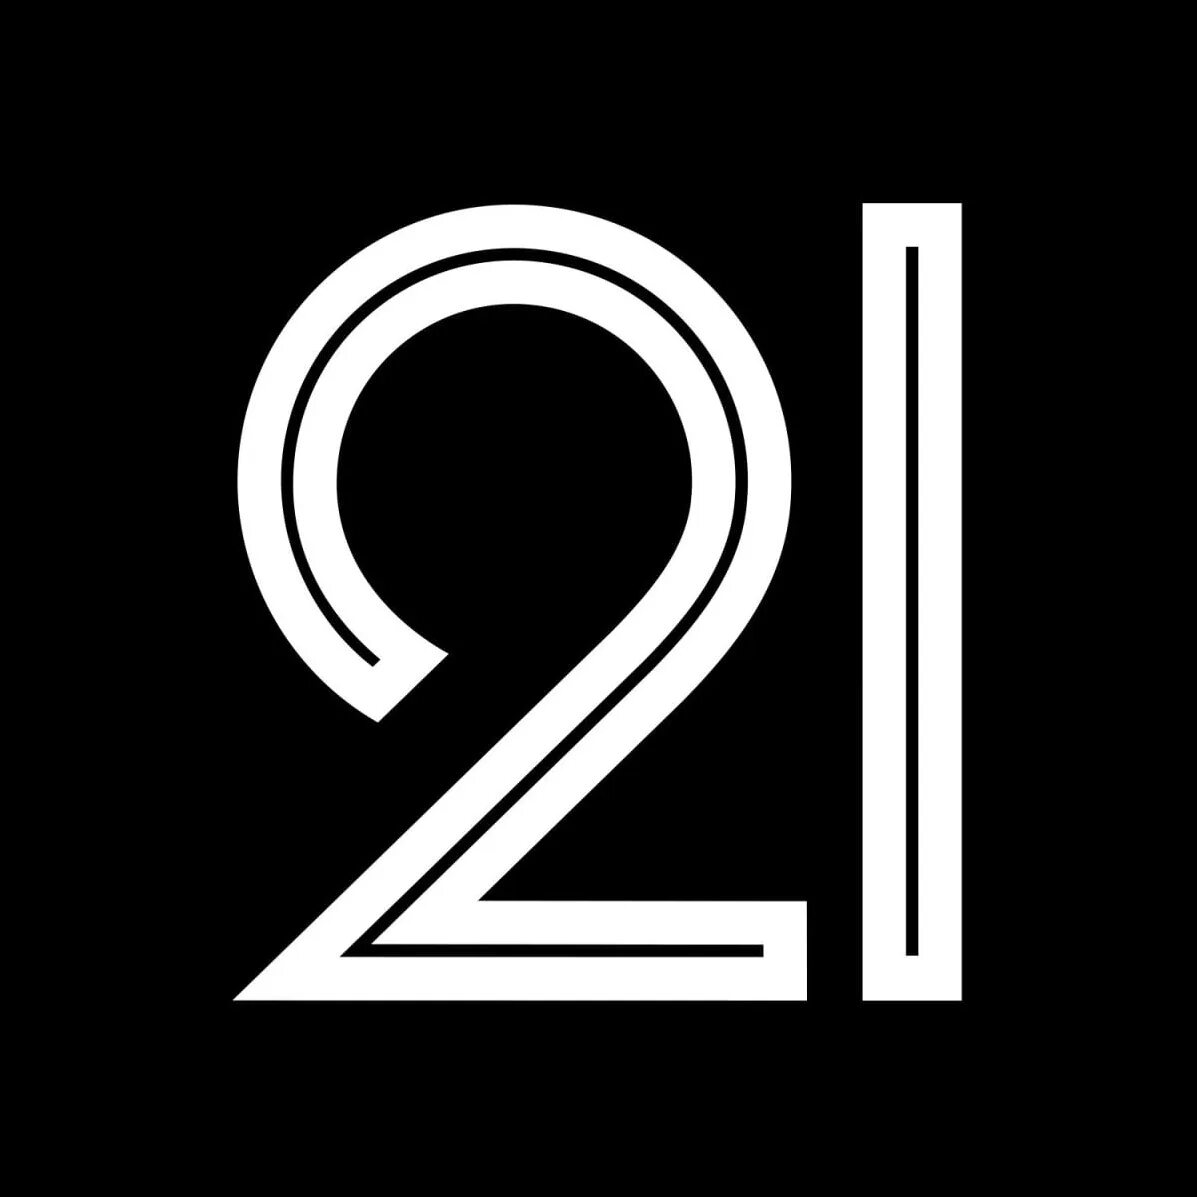 Картинки 21. Цифра 21. Лого с цифрами. 21 Логотип. Цифра 21 картинки.